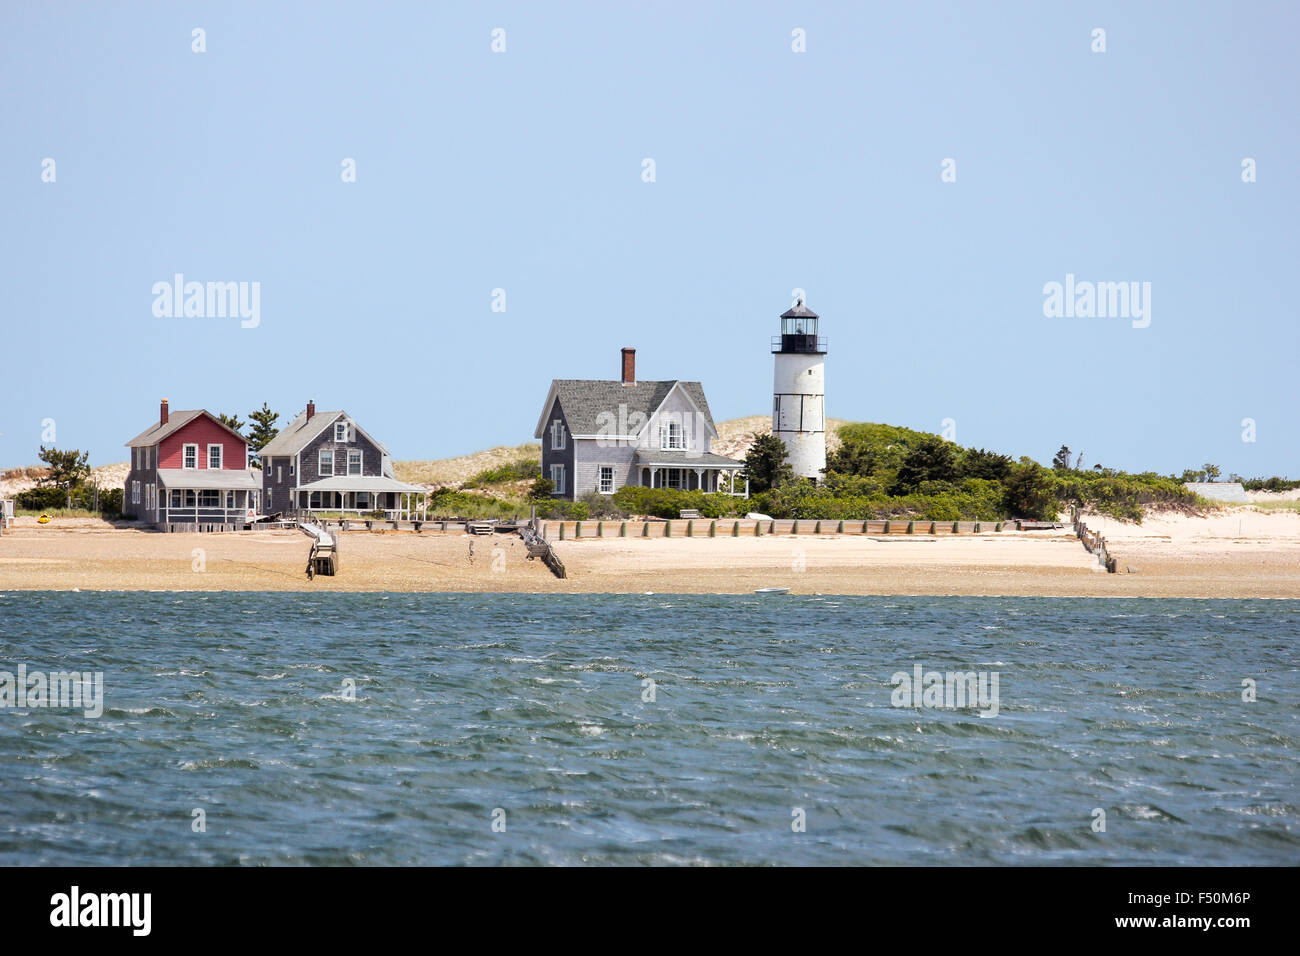 Sandy neck beach cottage ancienne colonie et sandy neck lighthouse vu de l'eau. Cape Cod, Massachusetts Banque D'Images